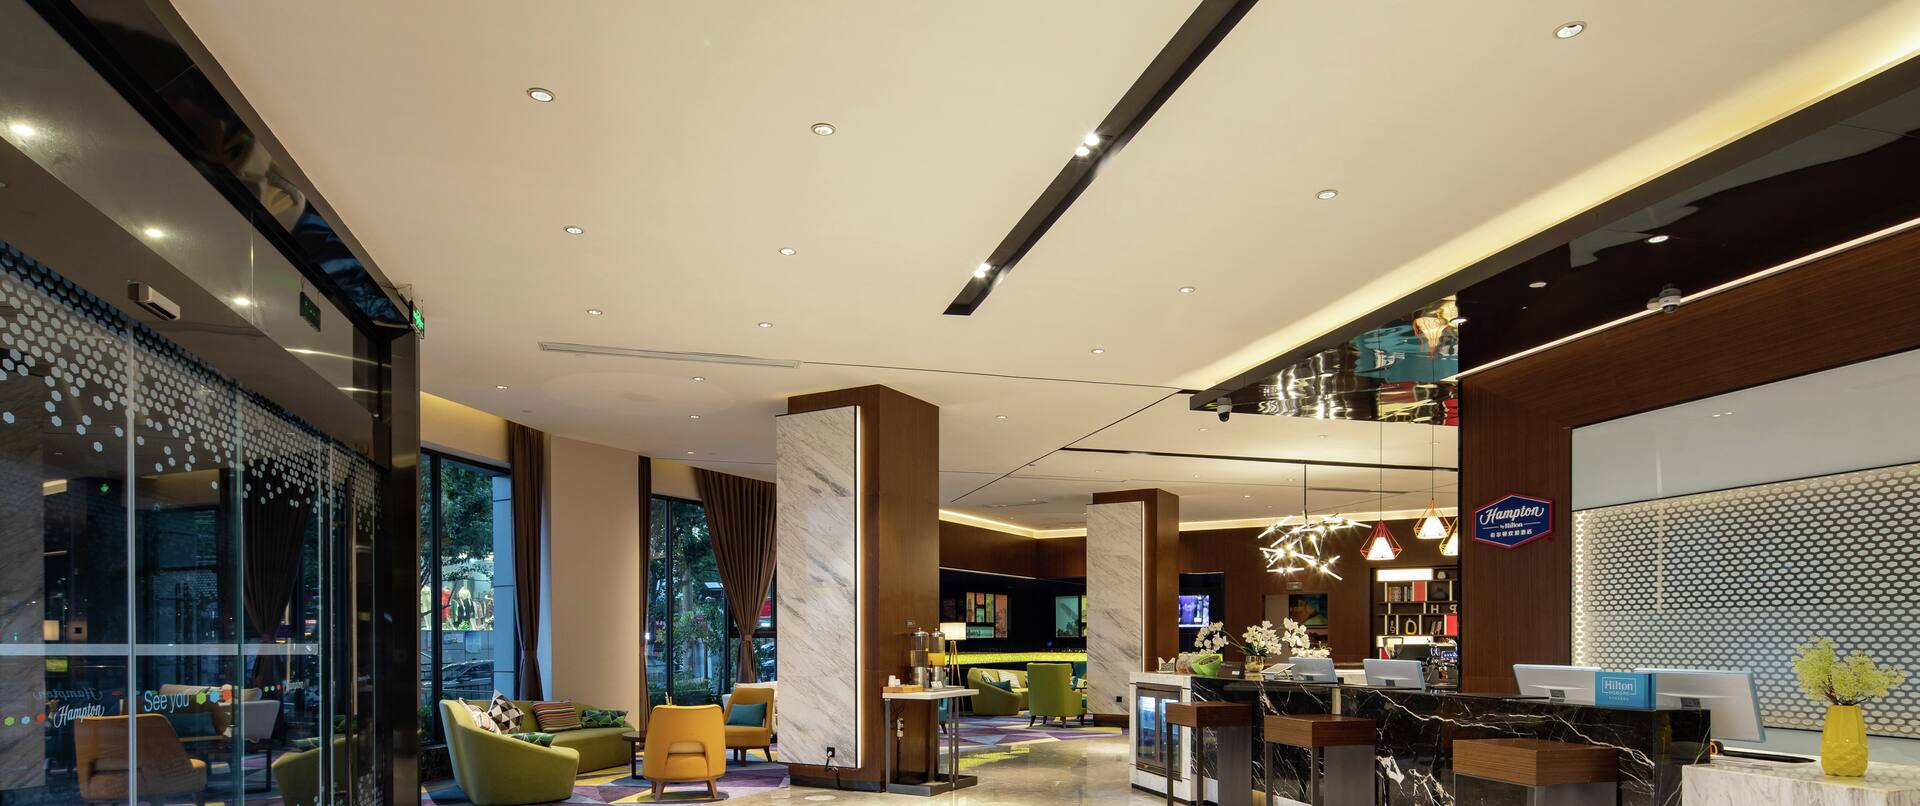 Lobby, reception area